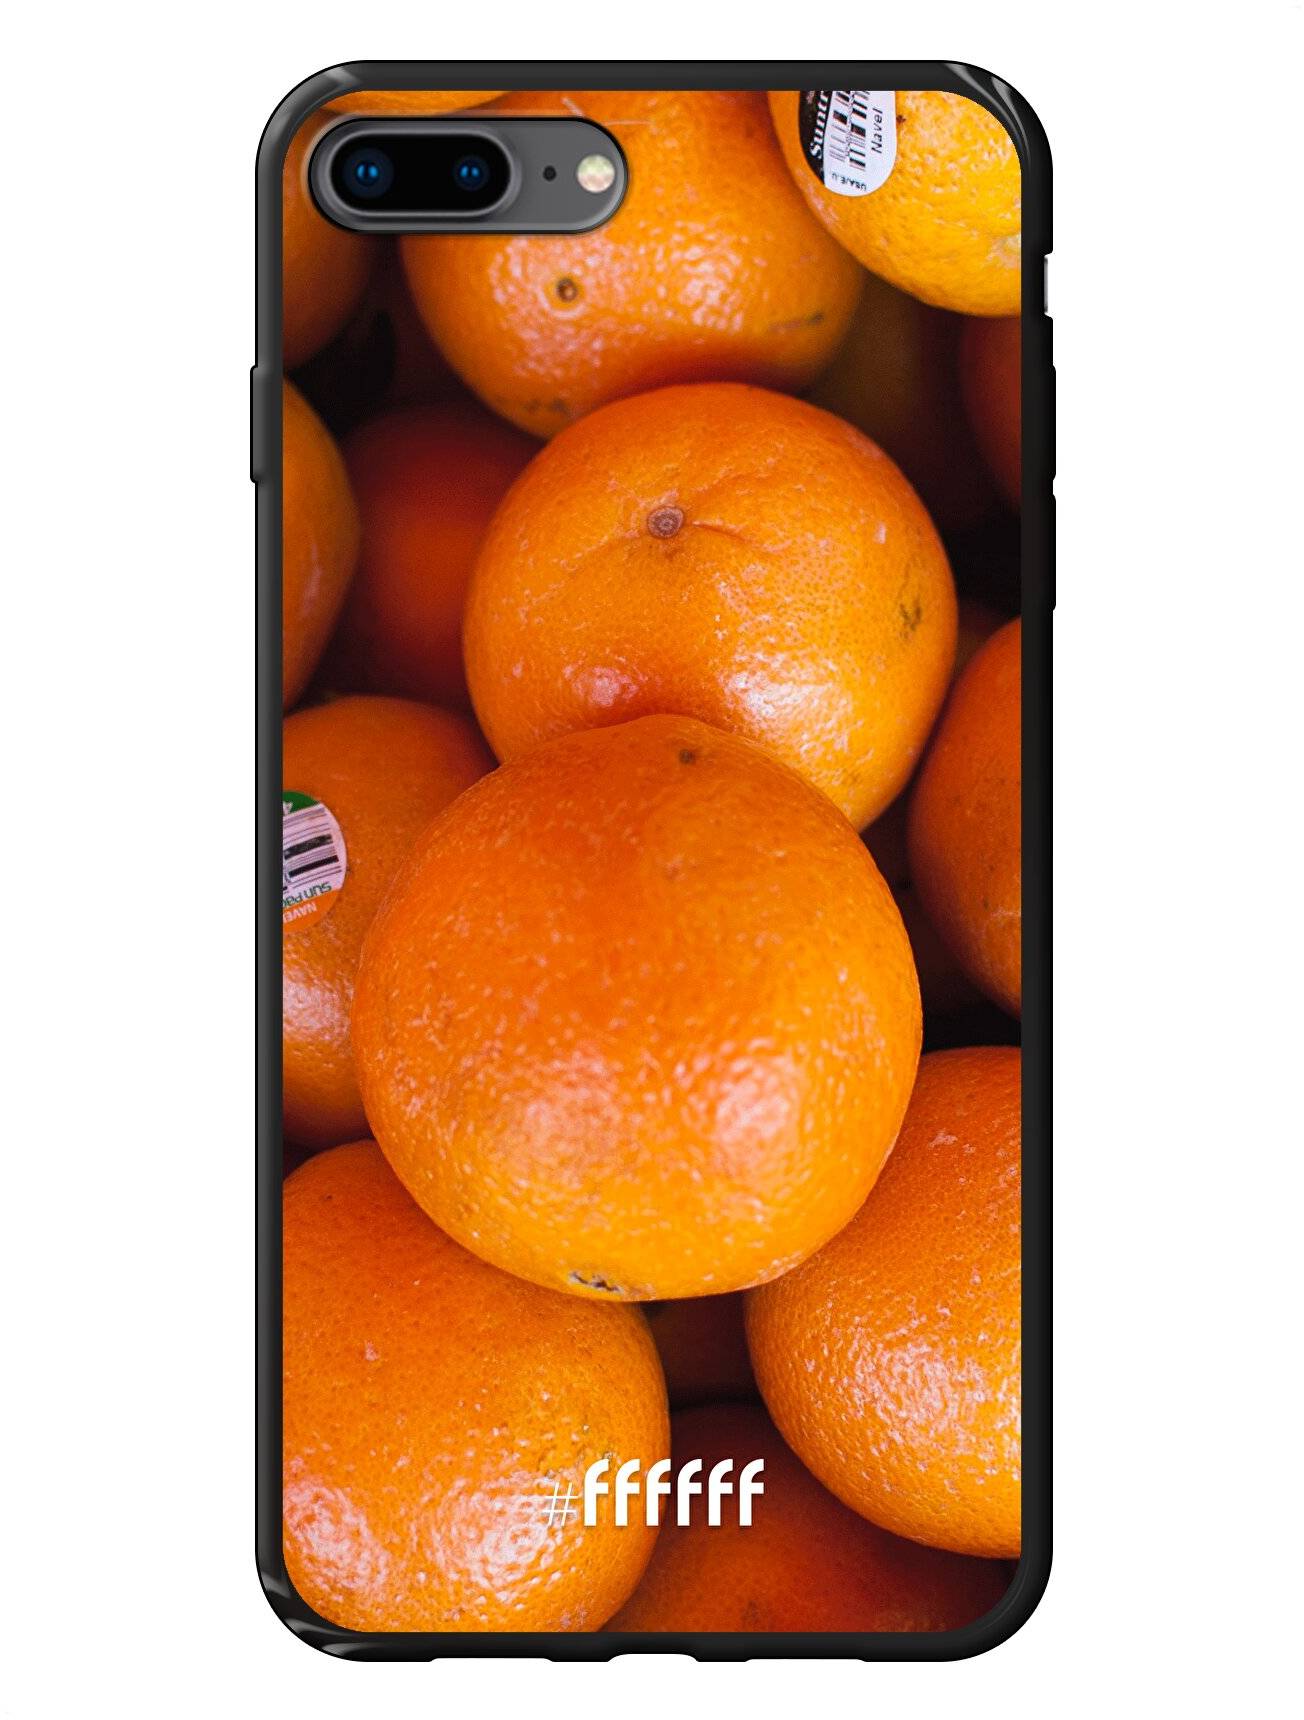 Sinaasappel iPhone 8 Plus